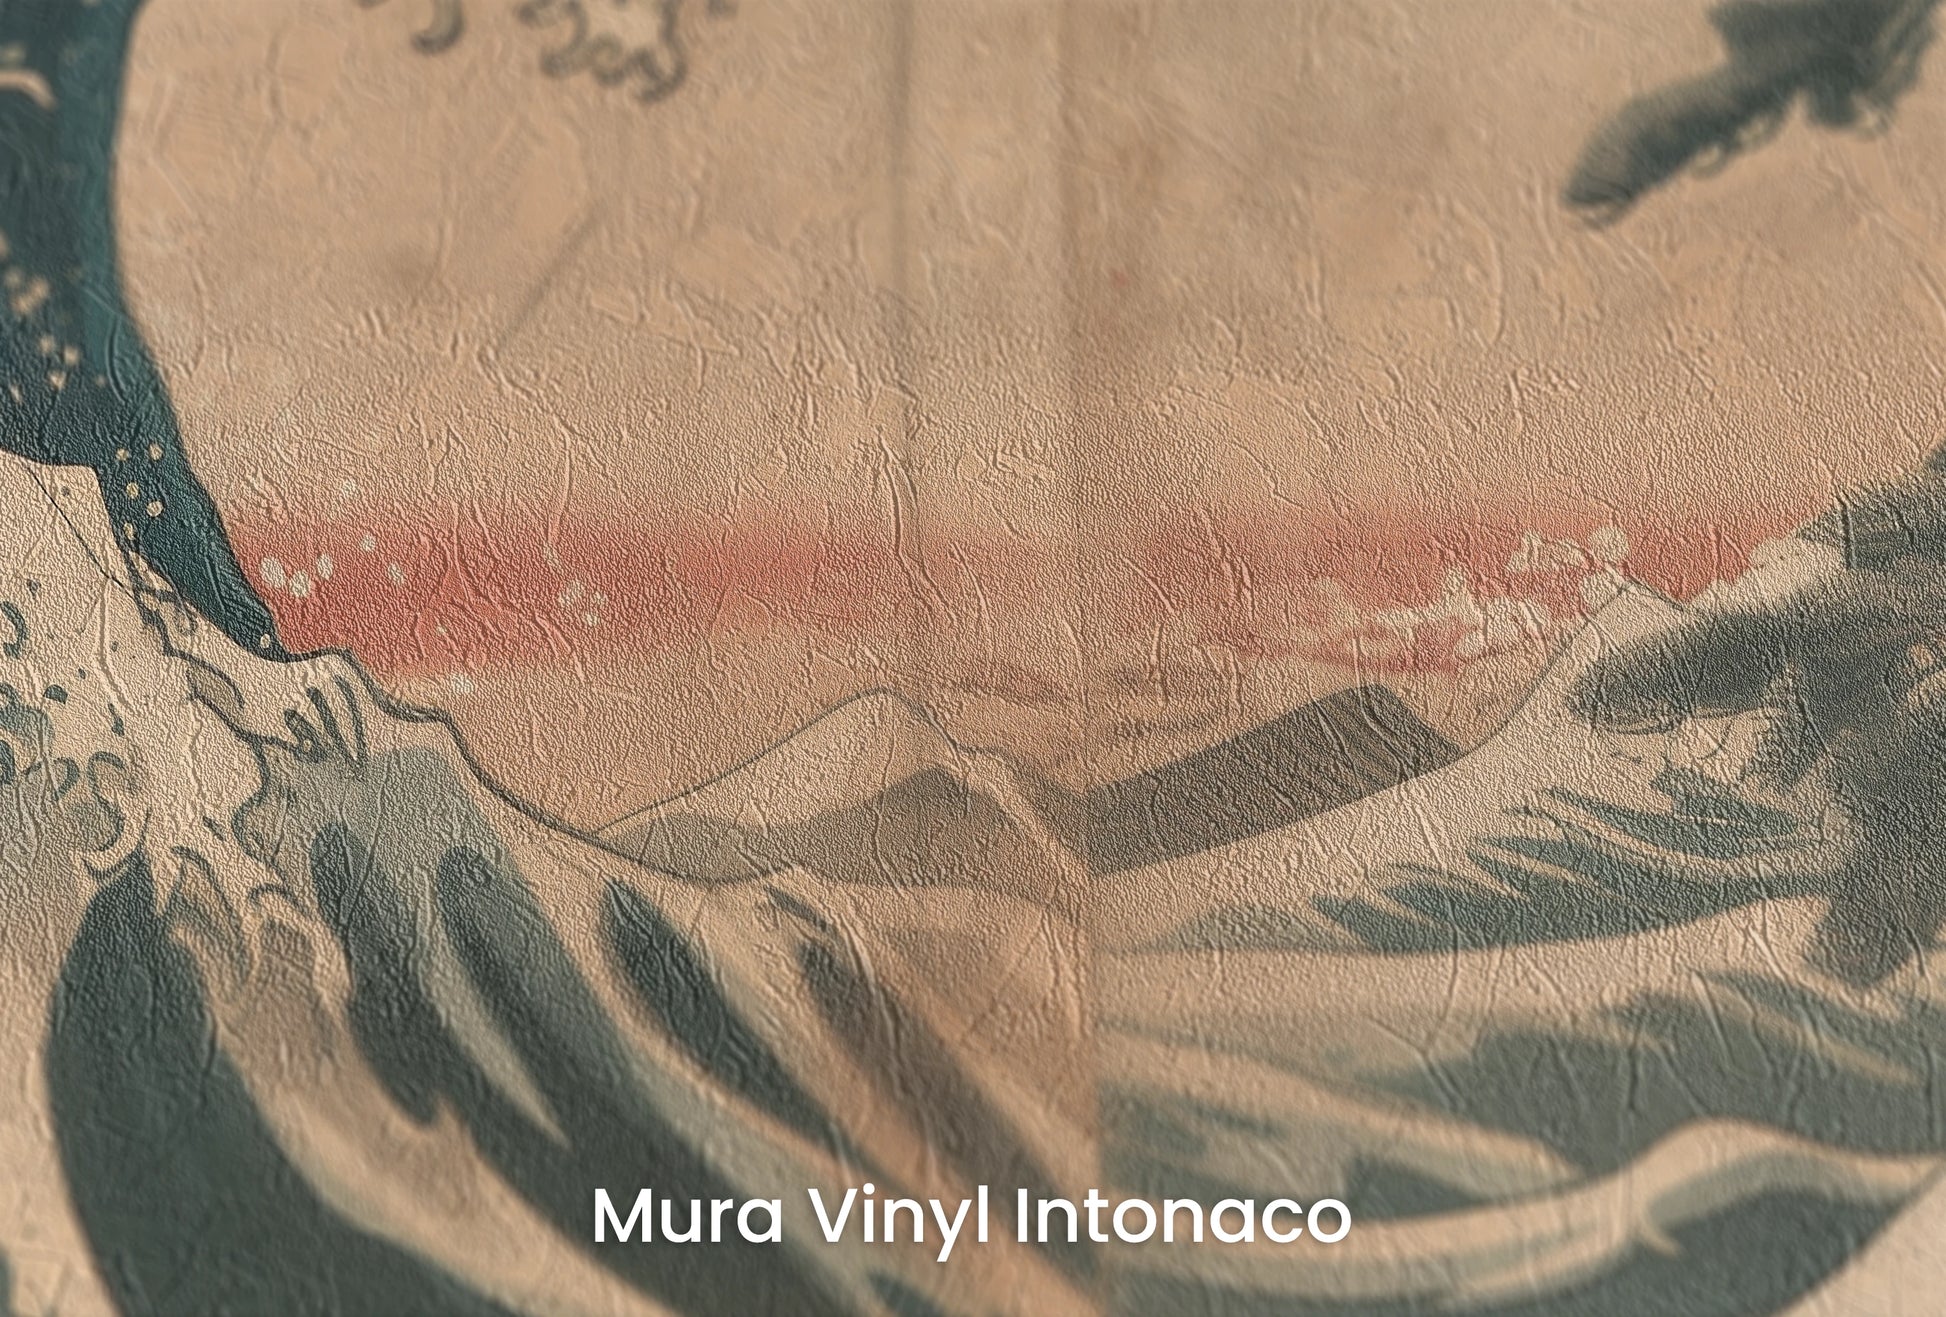 Zbliżenie na artystyczną fototapetę o nazwie Pine Crest Wave na podłożu Mura Vinyl Intonaco - struktura tartego tynku.